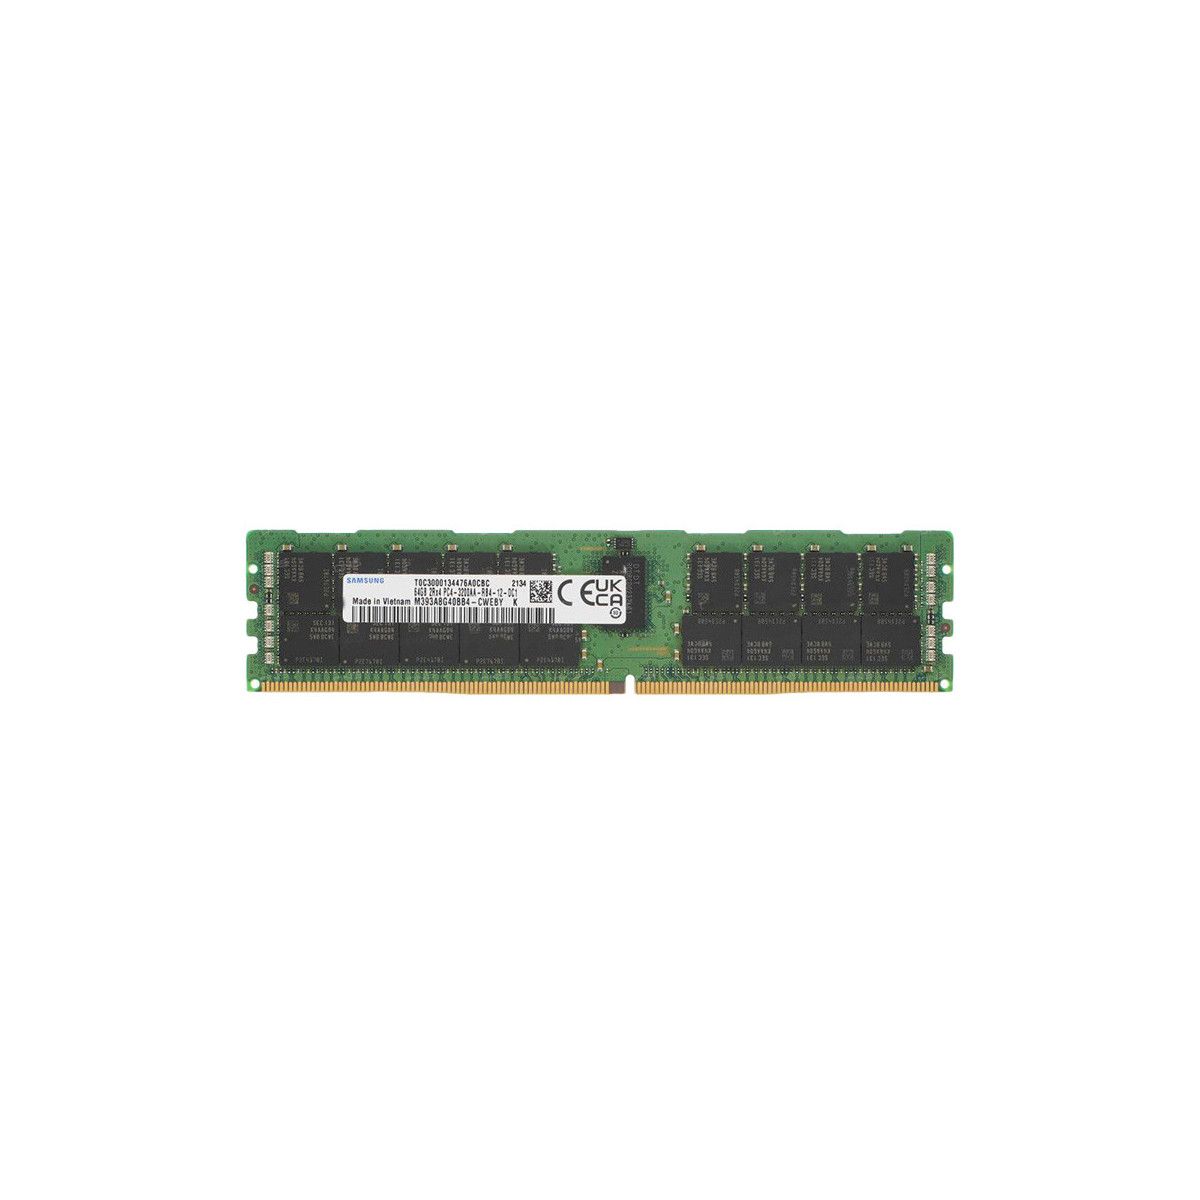 AA810828-MS - Memstar 1x 64GB DDR4-3200 RDIMM PC4-25600R - Mem-Star Kompatibel OEM Speichermedien 1 - Memstar 